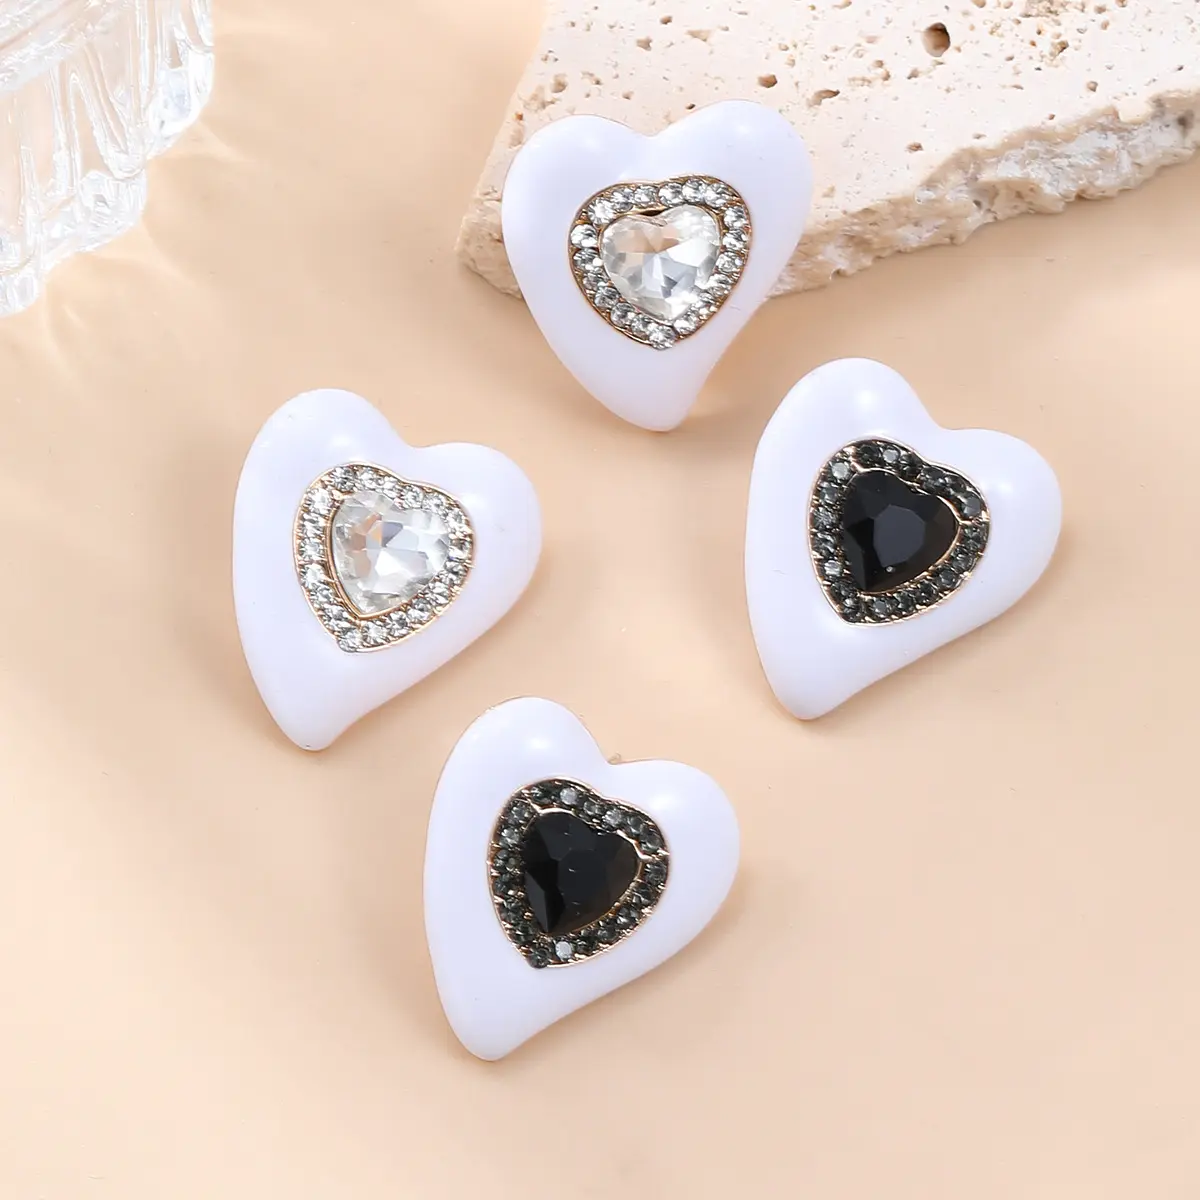 Wholesale Price Heart Shape Zinc Alloy Stud Earrings White Fashionable Jewelry Vintage Earrings For Women